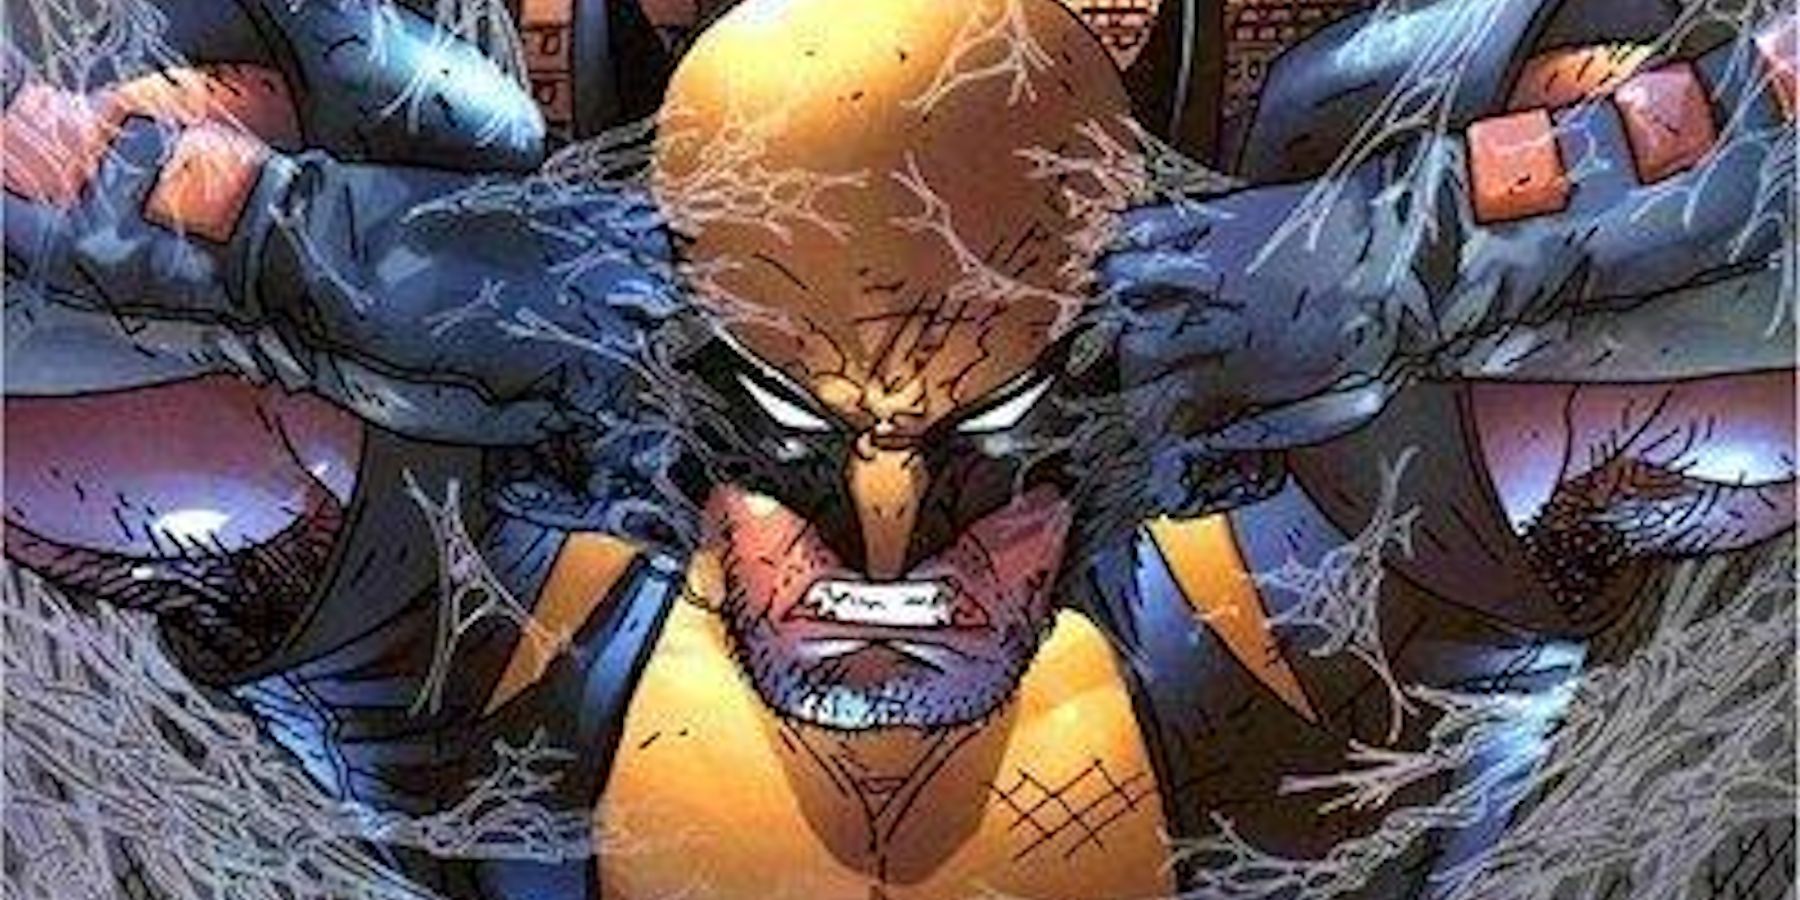 Wolverine caught in Spider-Man web